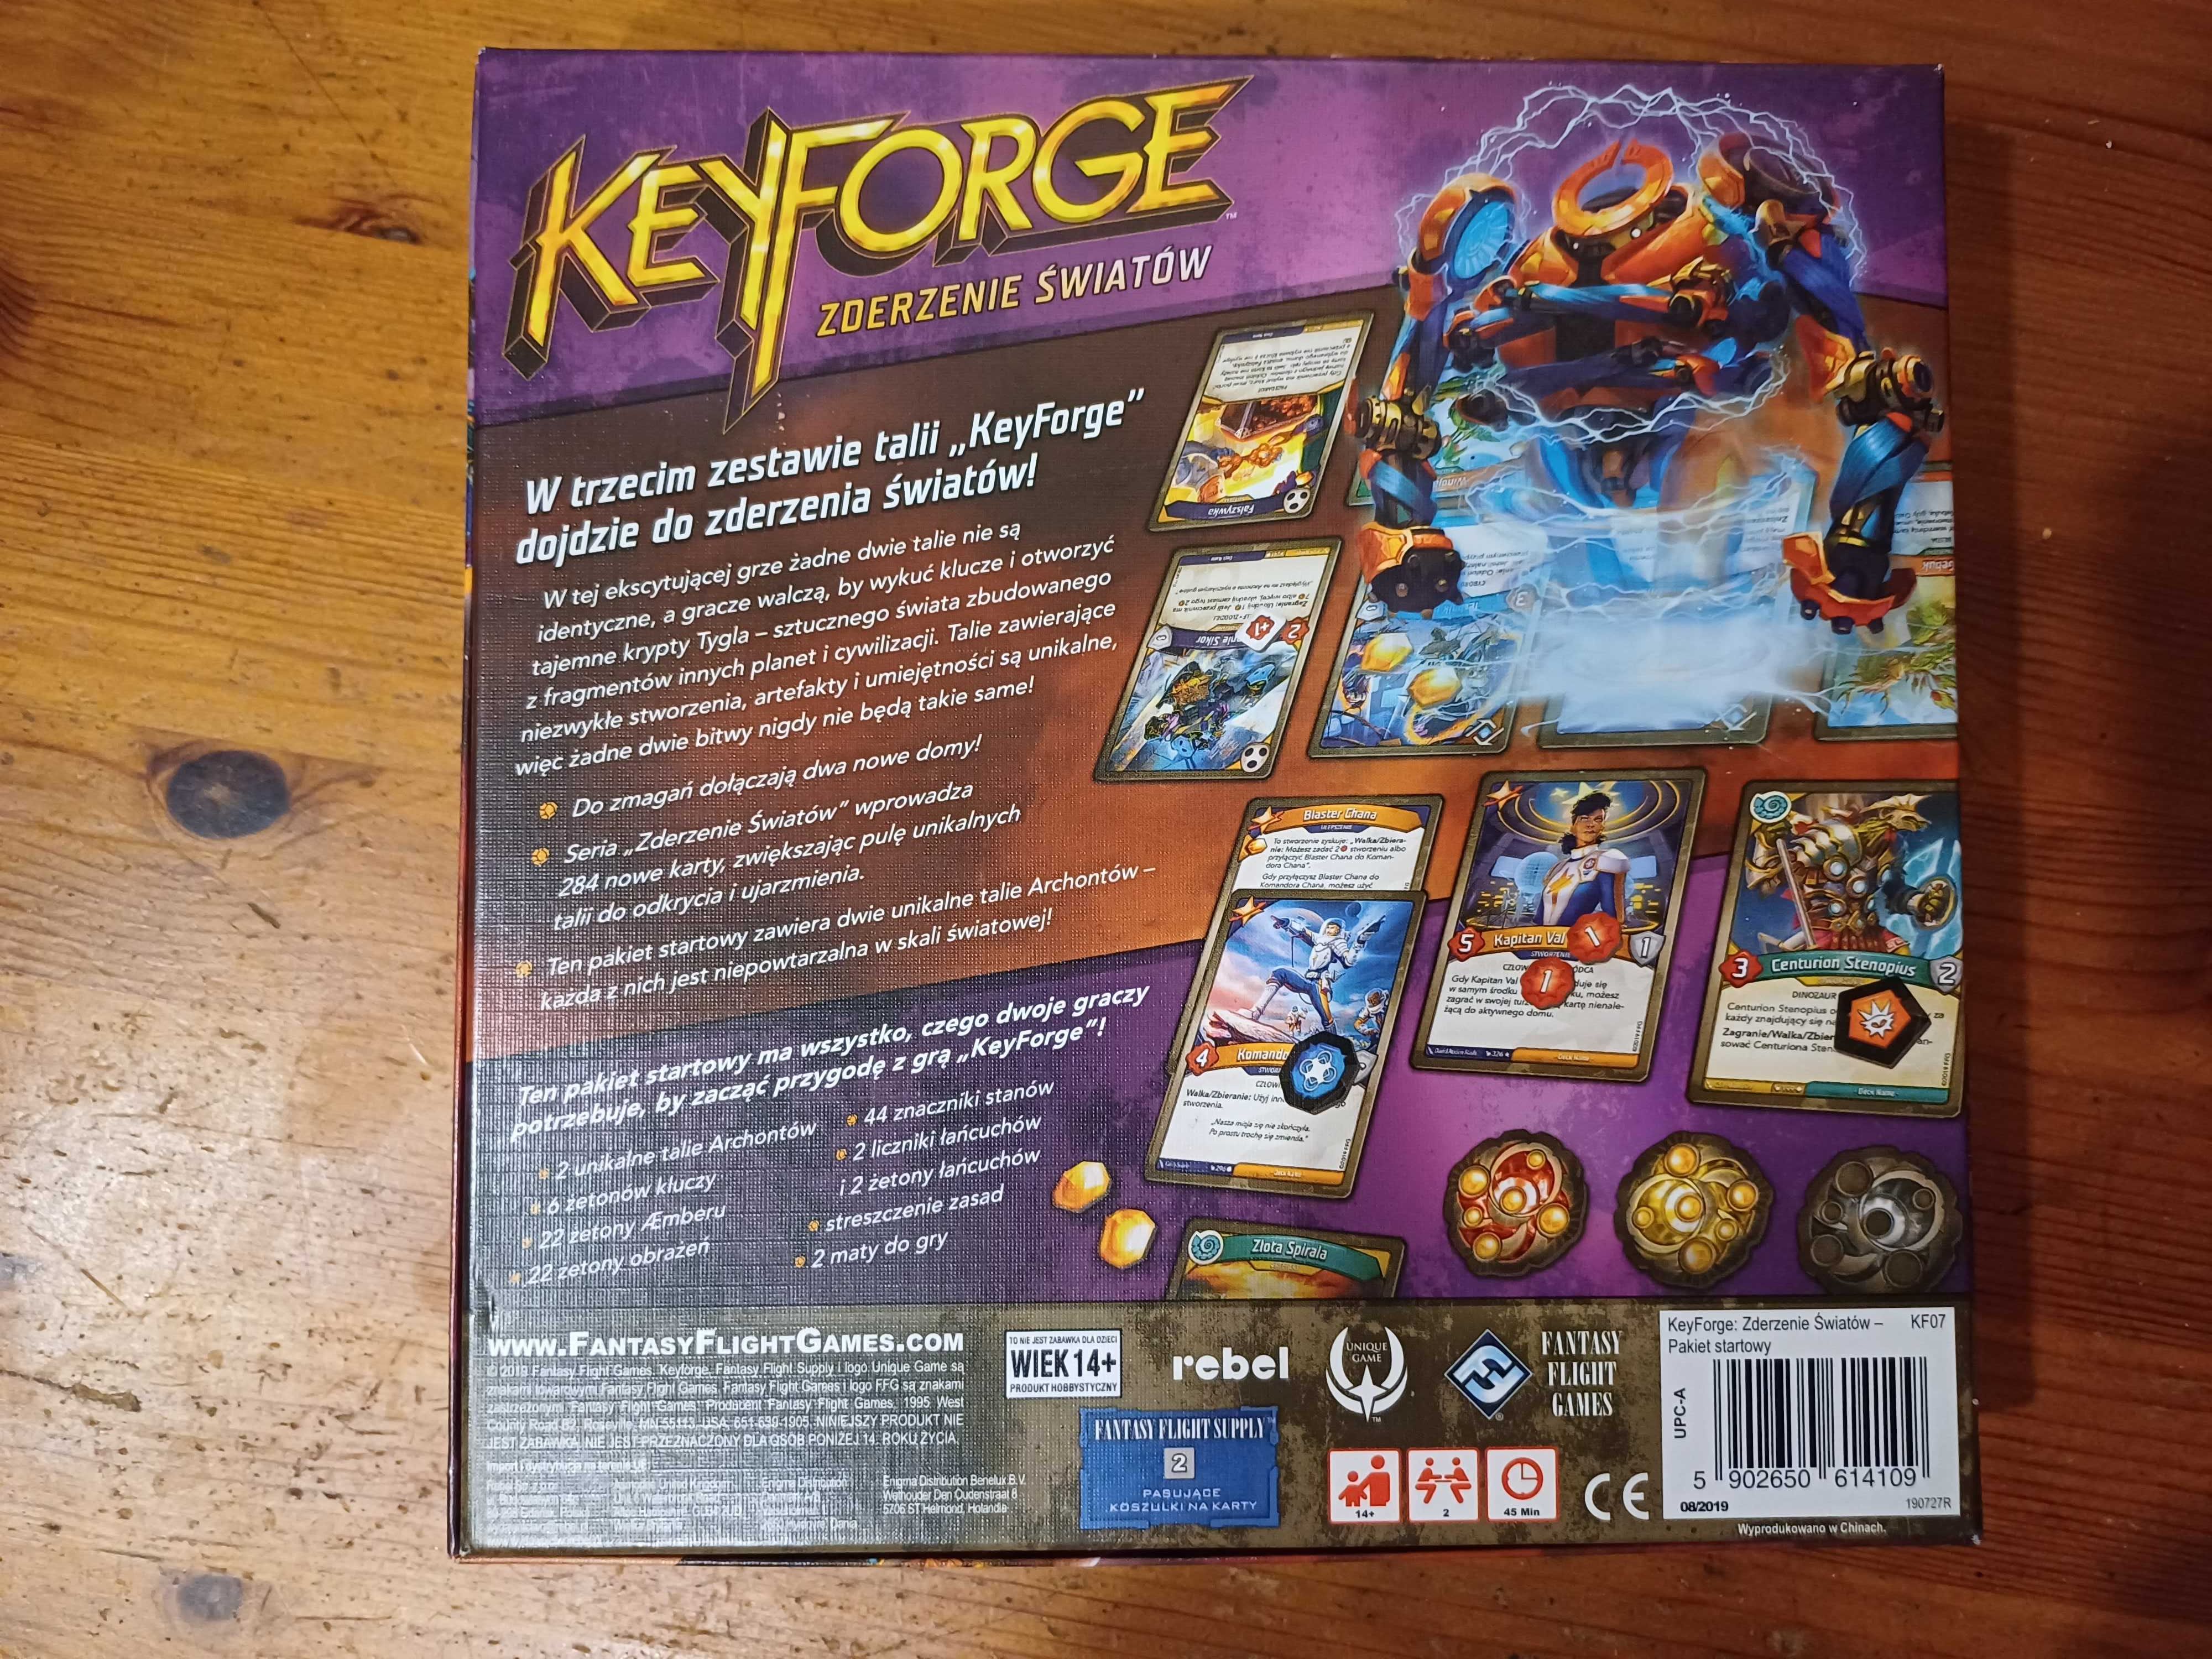 KeyForge. Zderzenie Światów, pakiet startowy